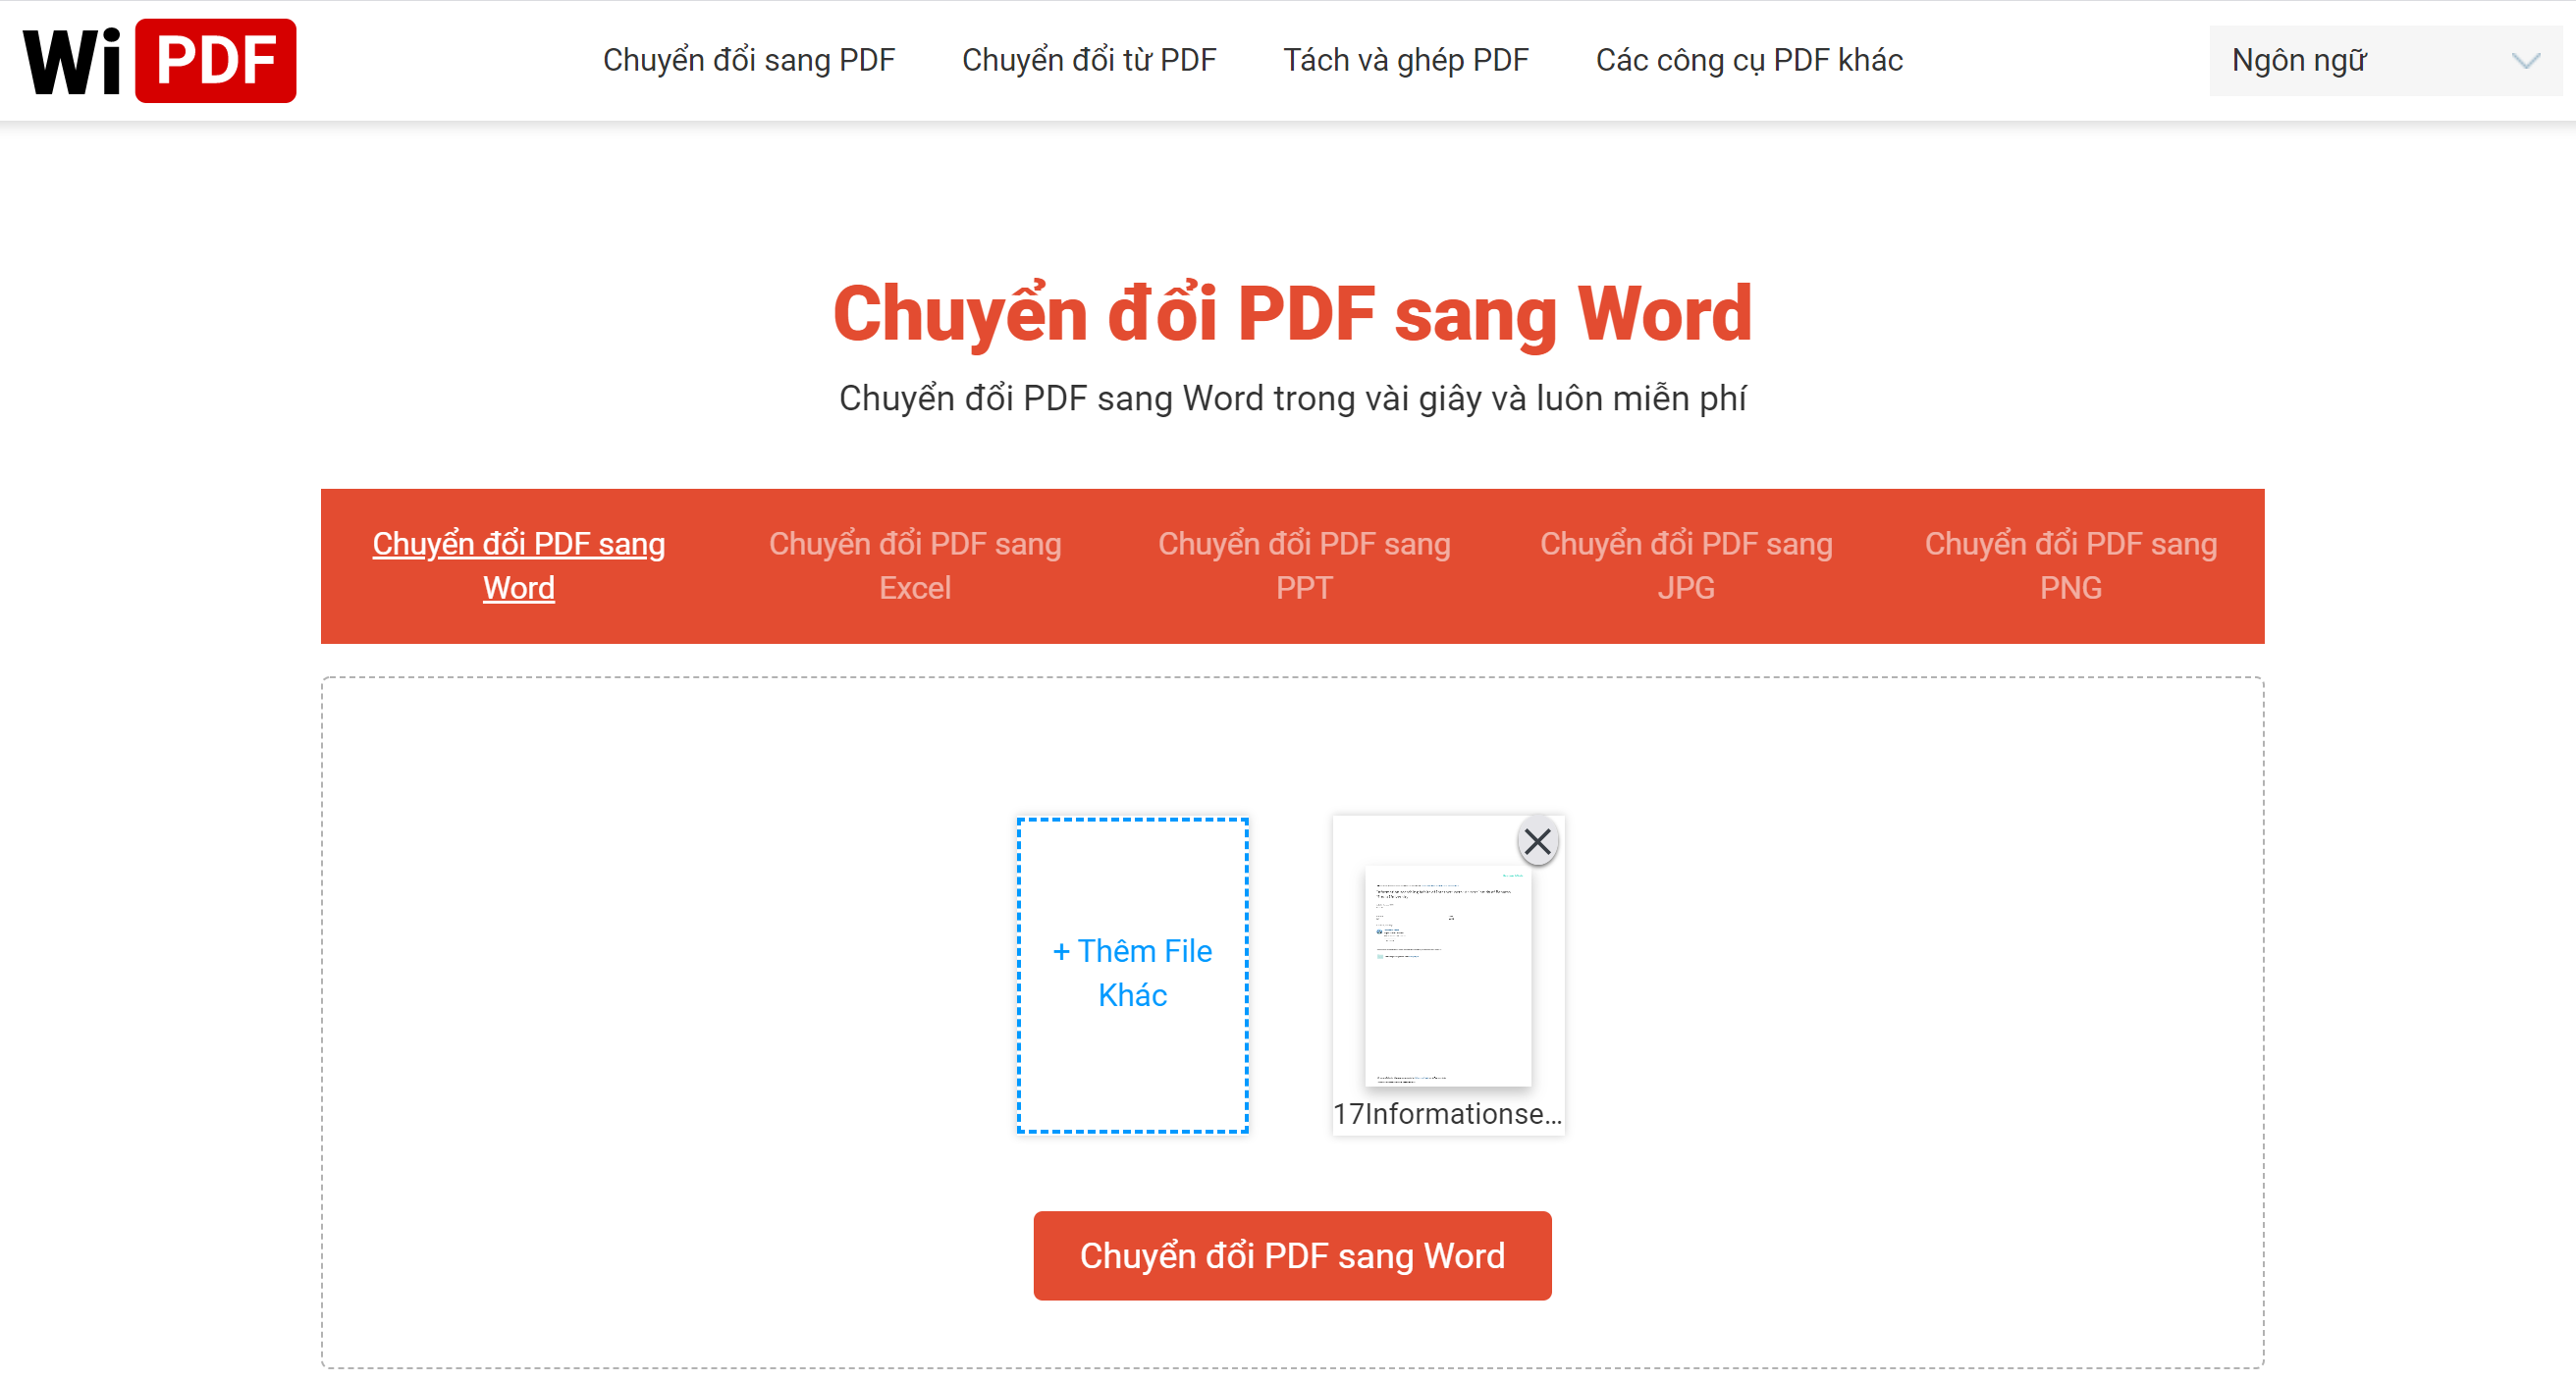 Tải file PDF để chuyển đổi sang Word